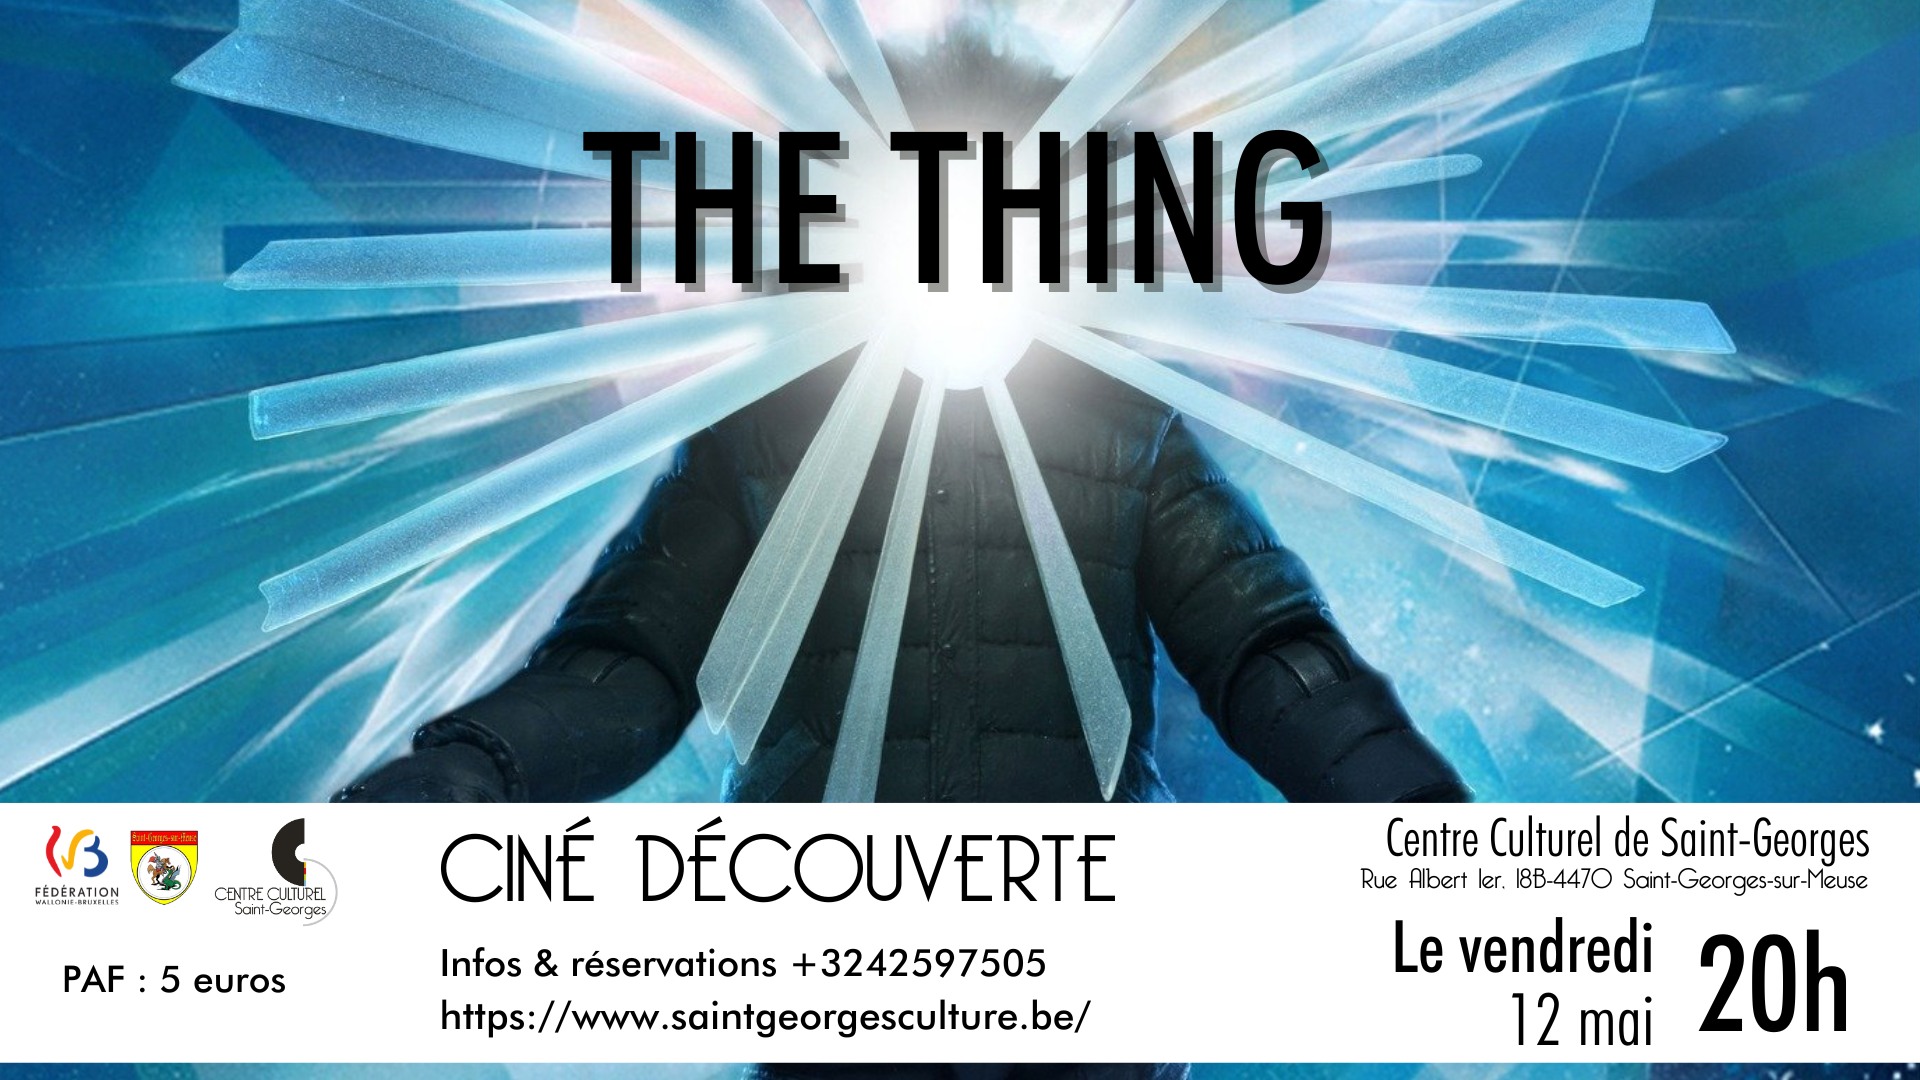 Ciné découverte - The Thing au Centre culturel e Saint-georges-sur-Meuse